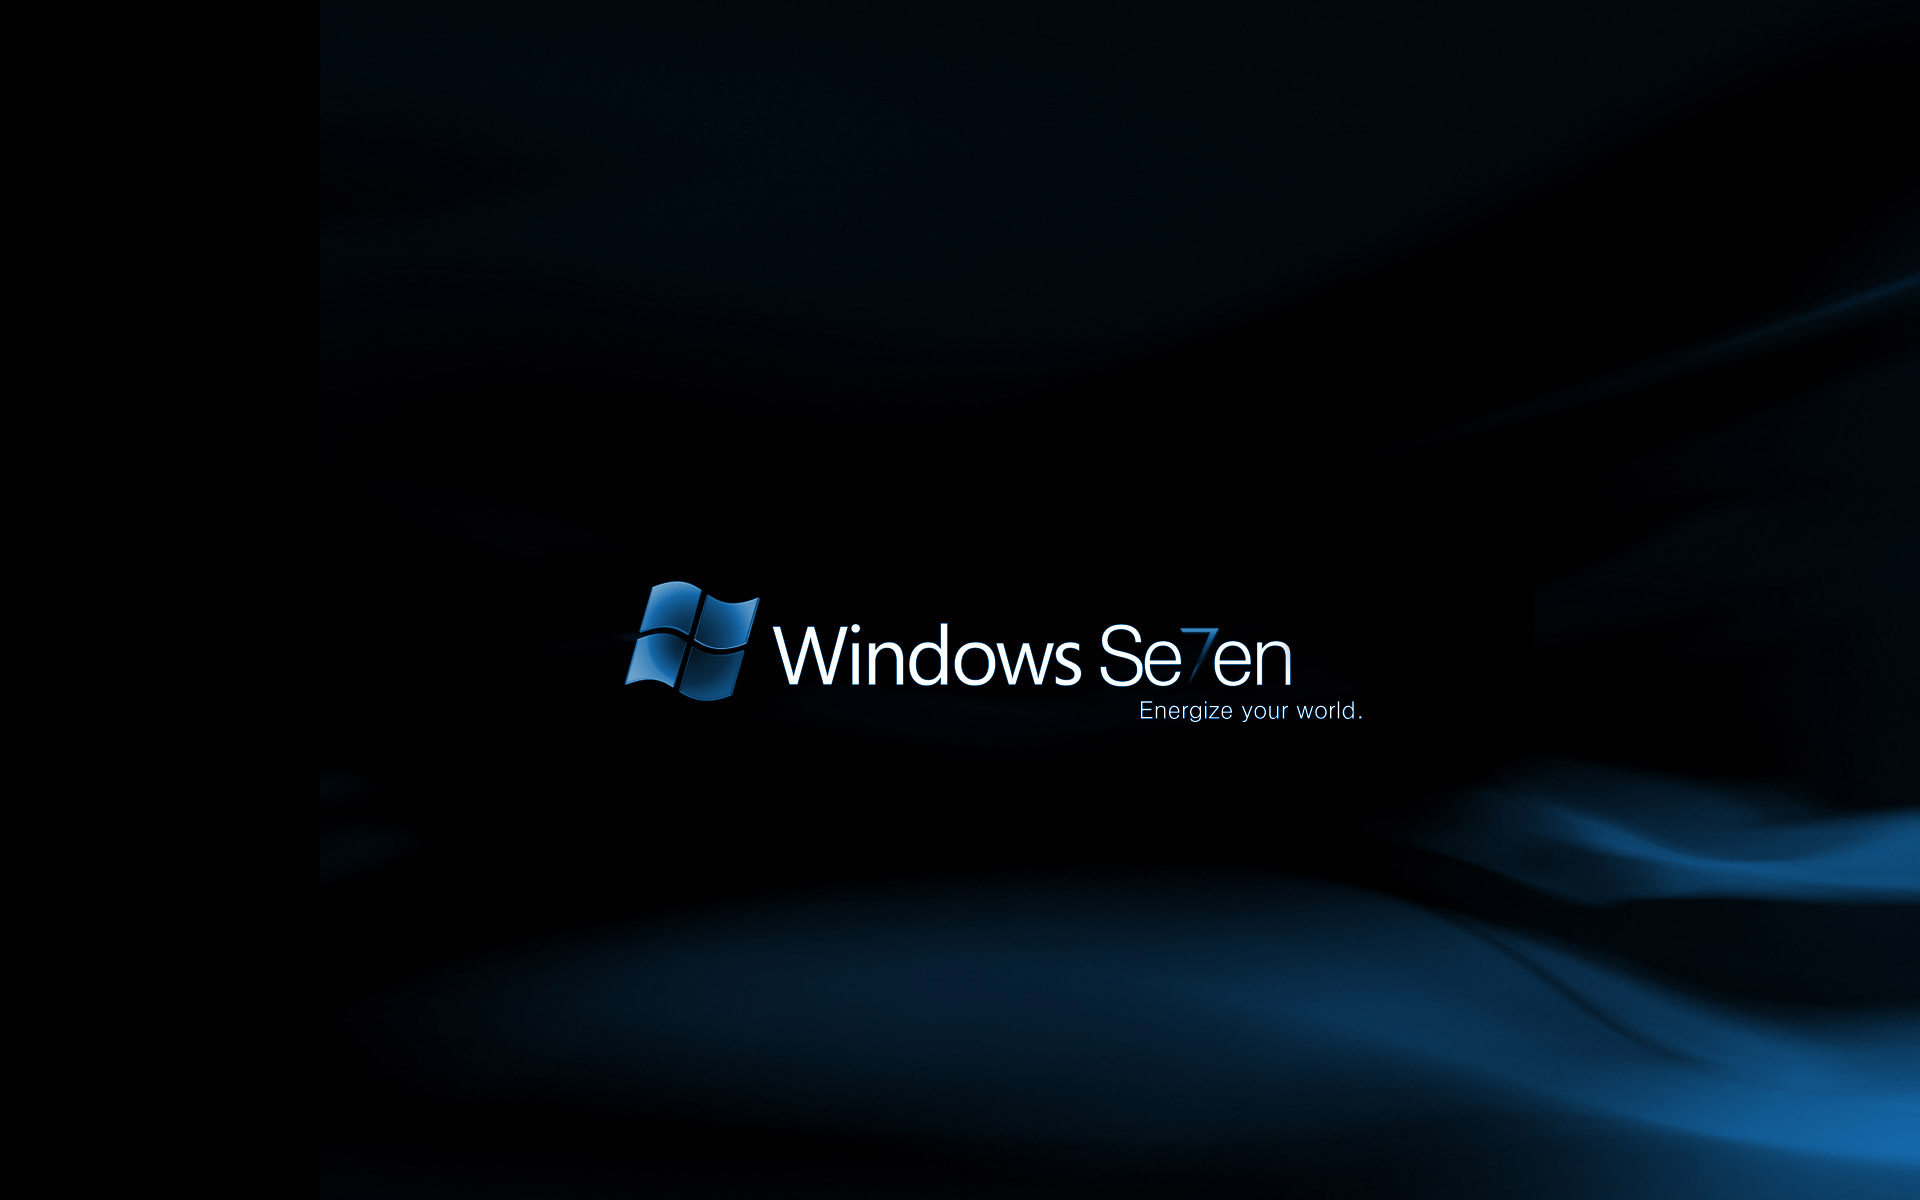 Windows 7 Energize Your World839379862 - Windows 7 Energize Your World - Your, World, Windows, Energize